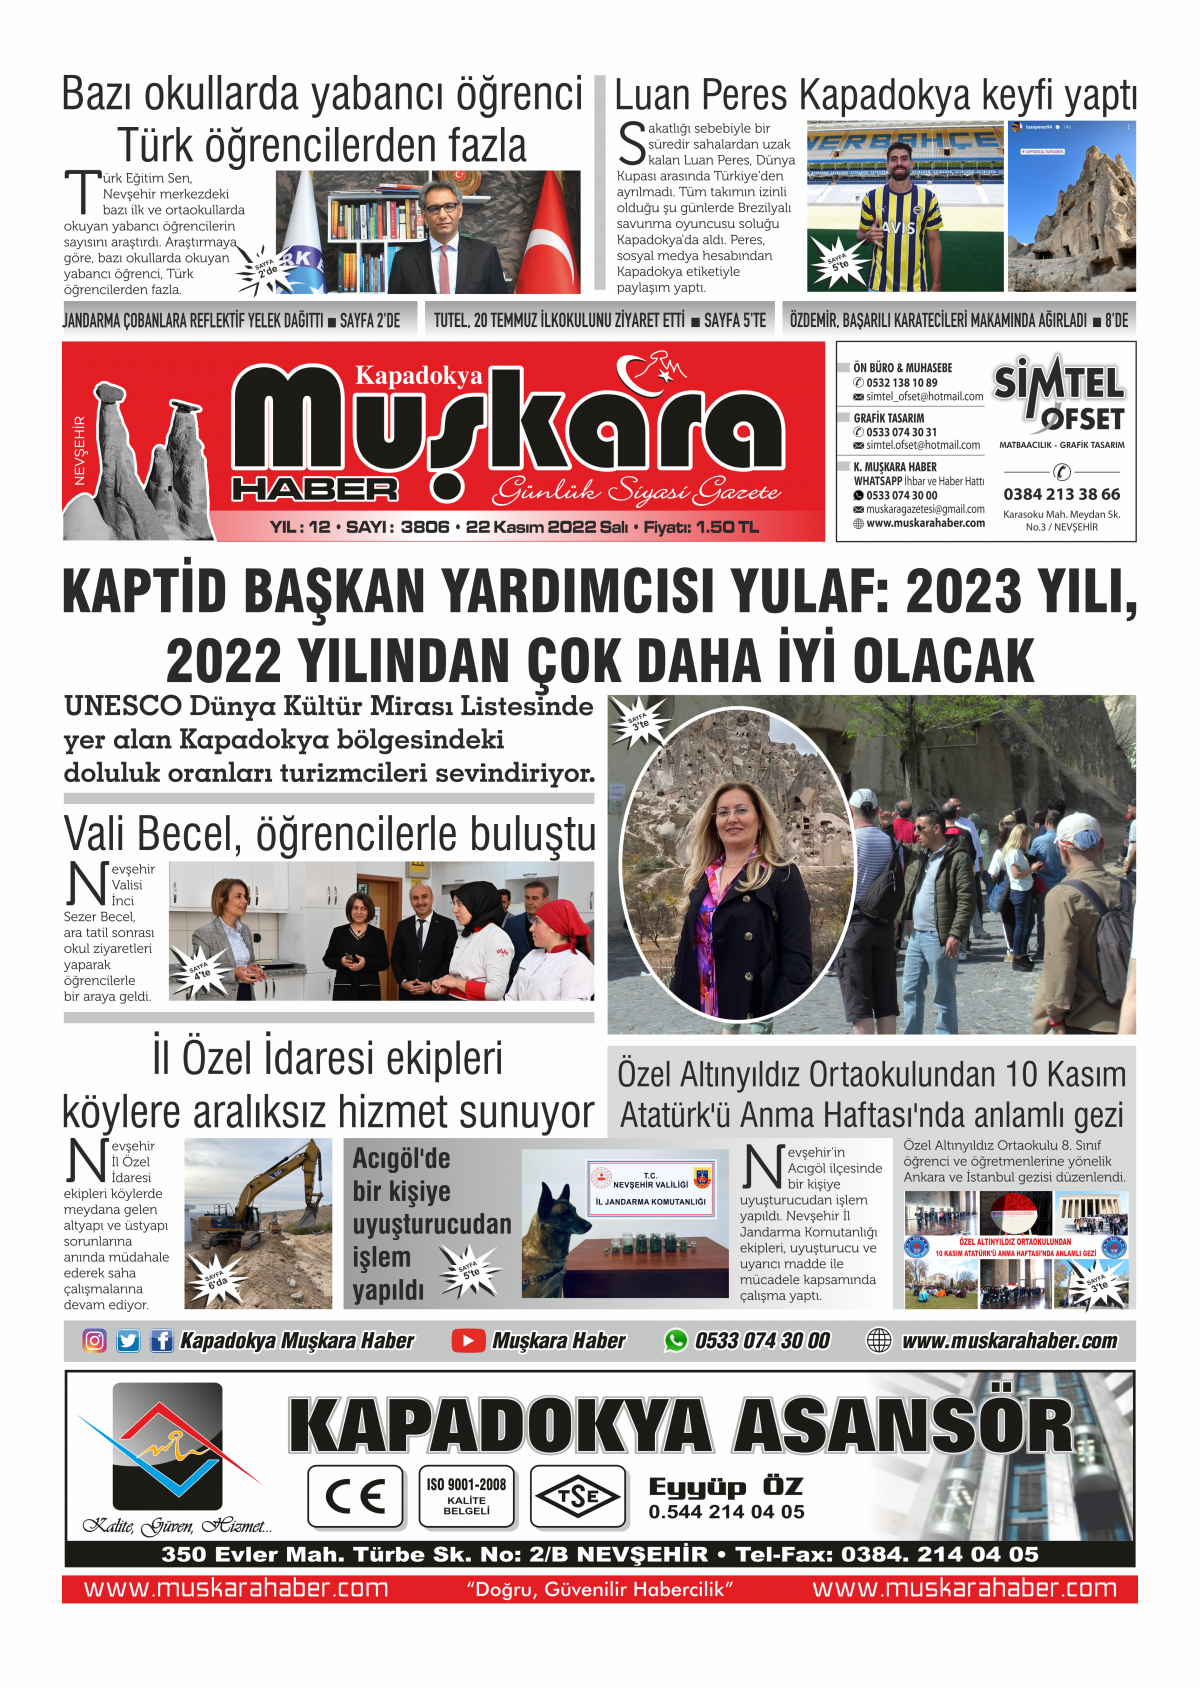 Nevşehir Haber - 22.11.2022 Manşeti